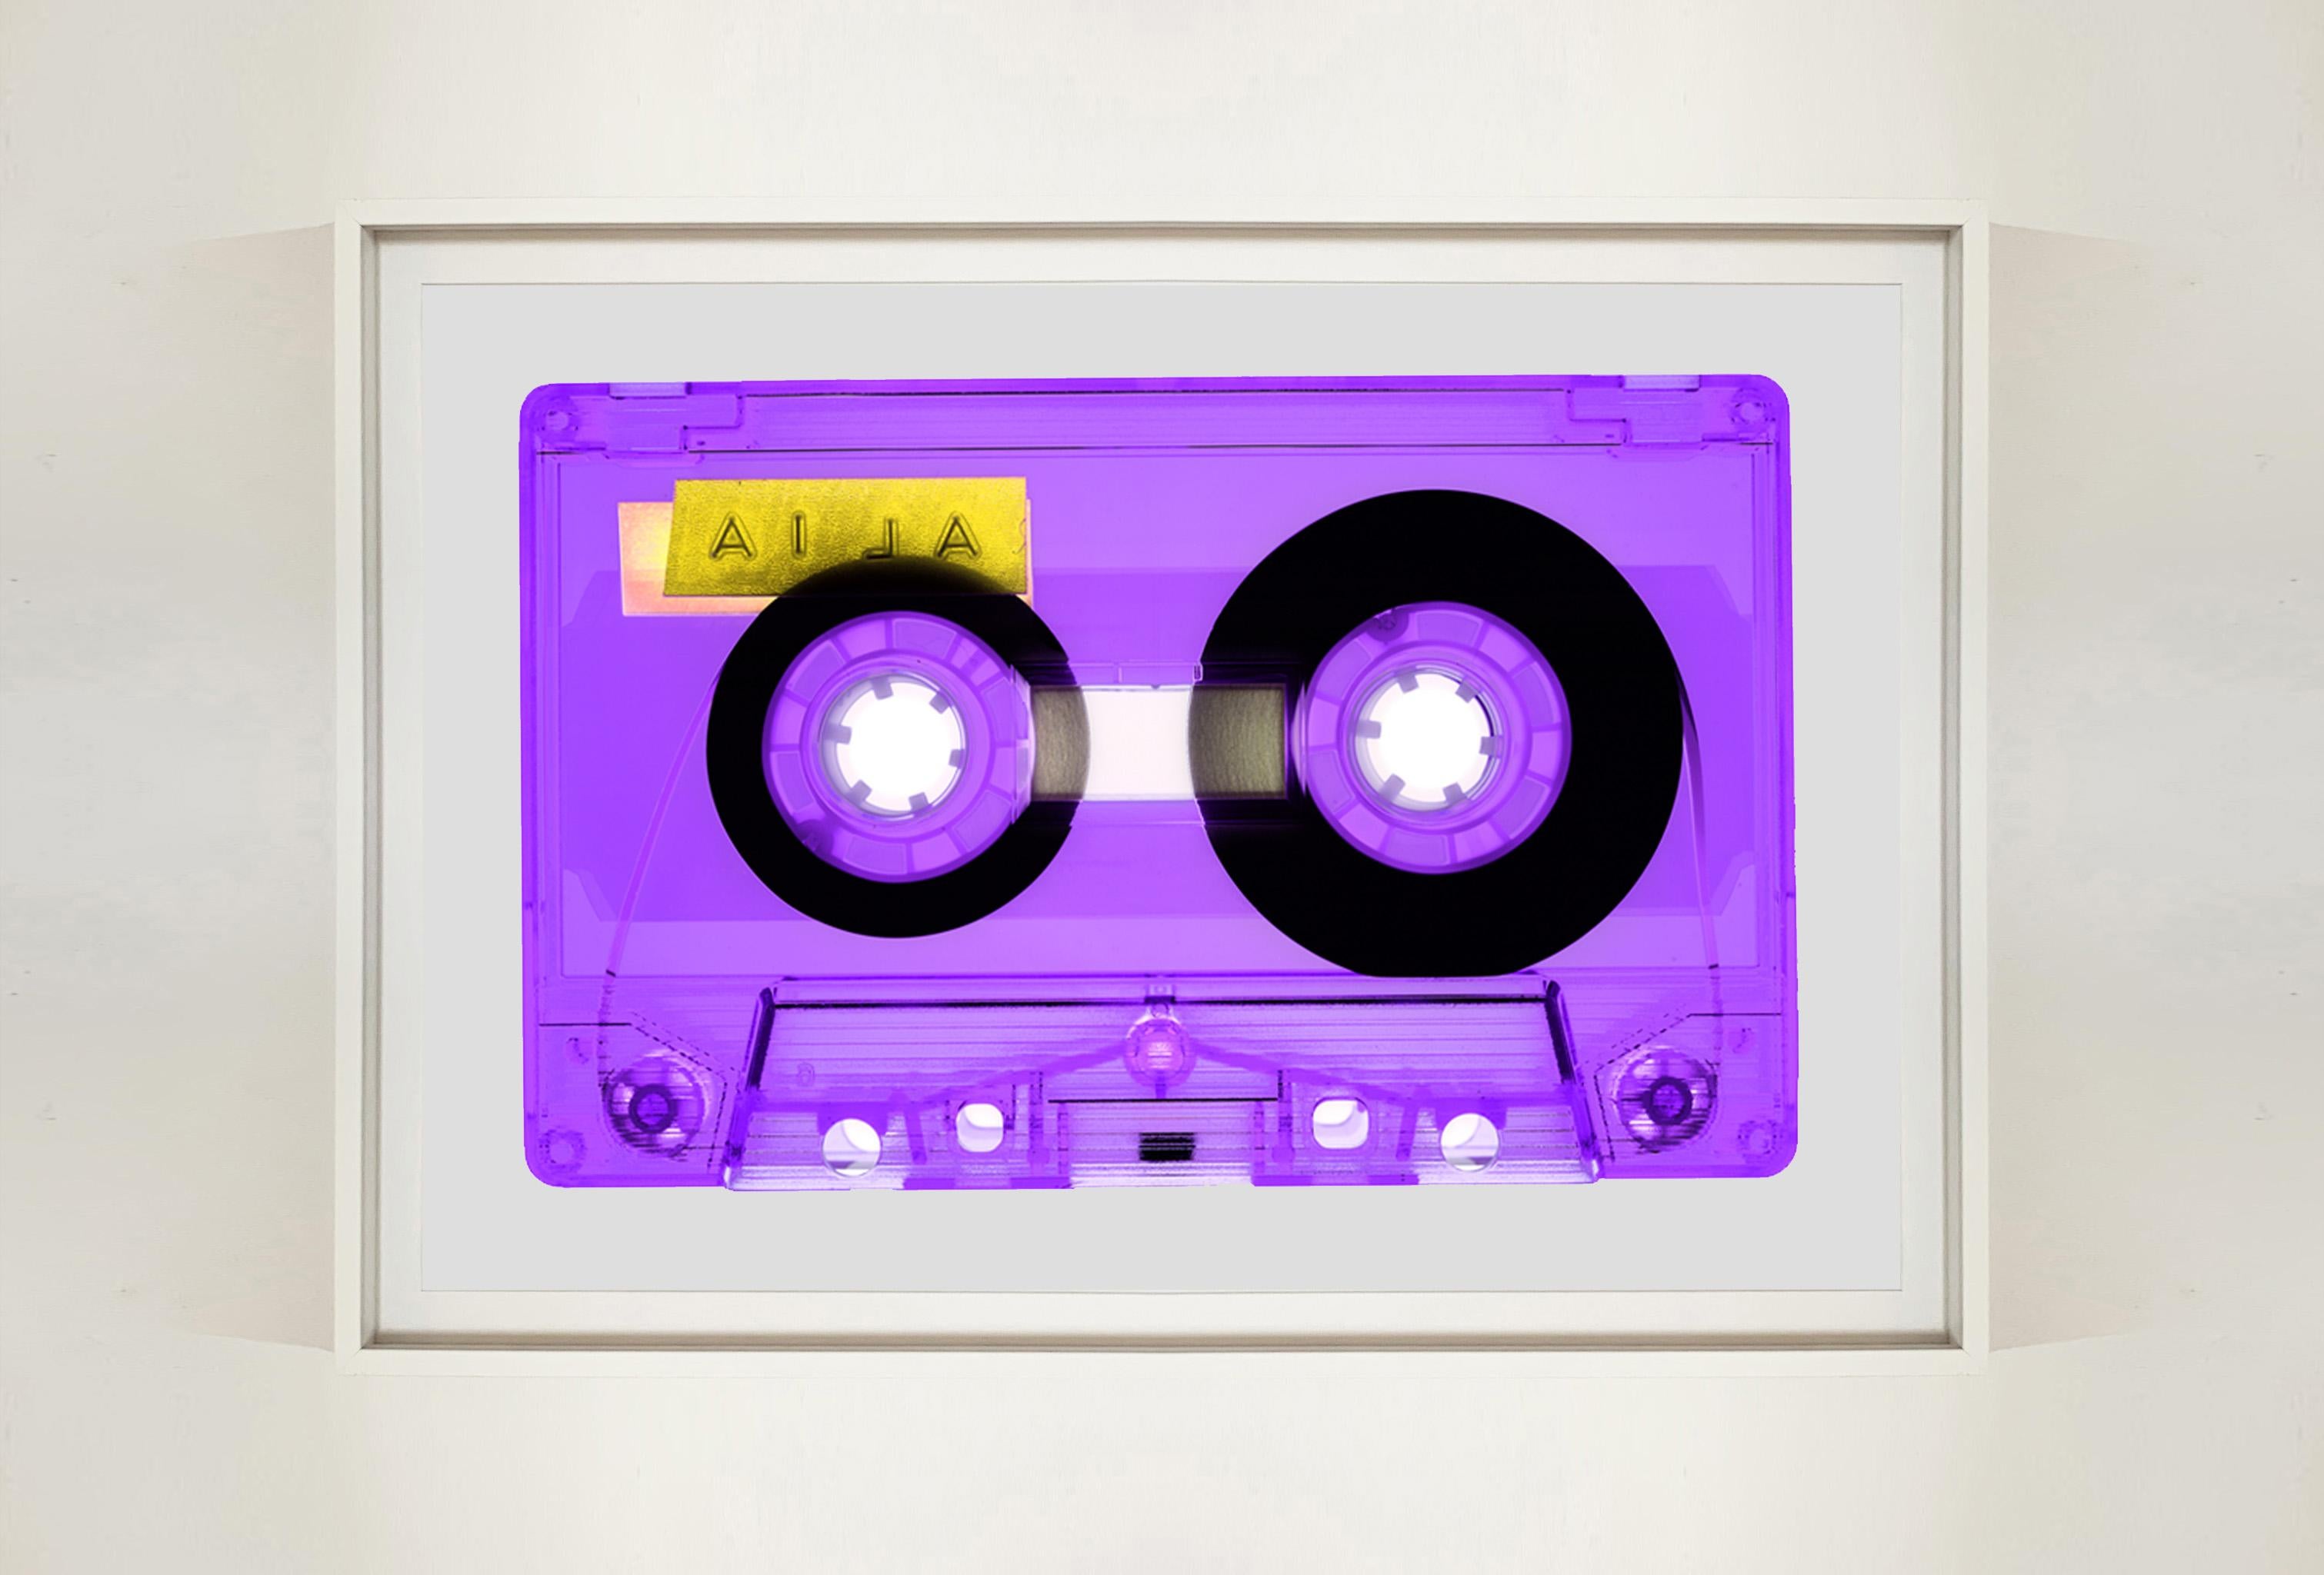 Tape-Kollektion, AILA Lila - Zeitgenössische Pop-Art-Farbfotografie (Violett), Print, von Heidler & Heeps